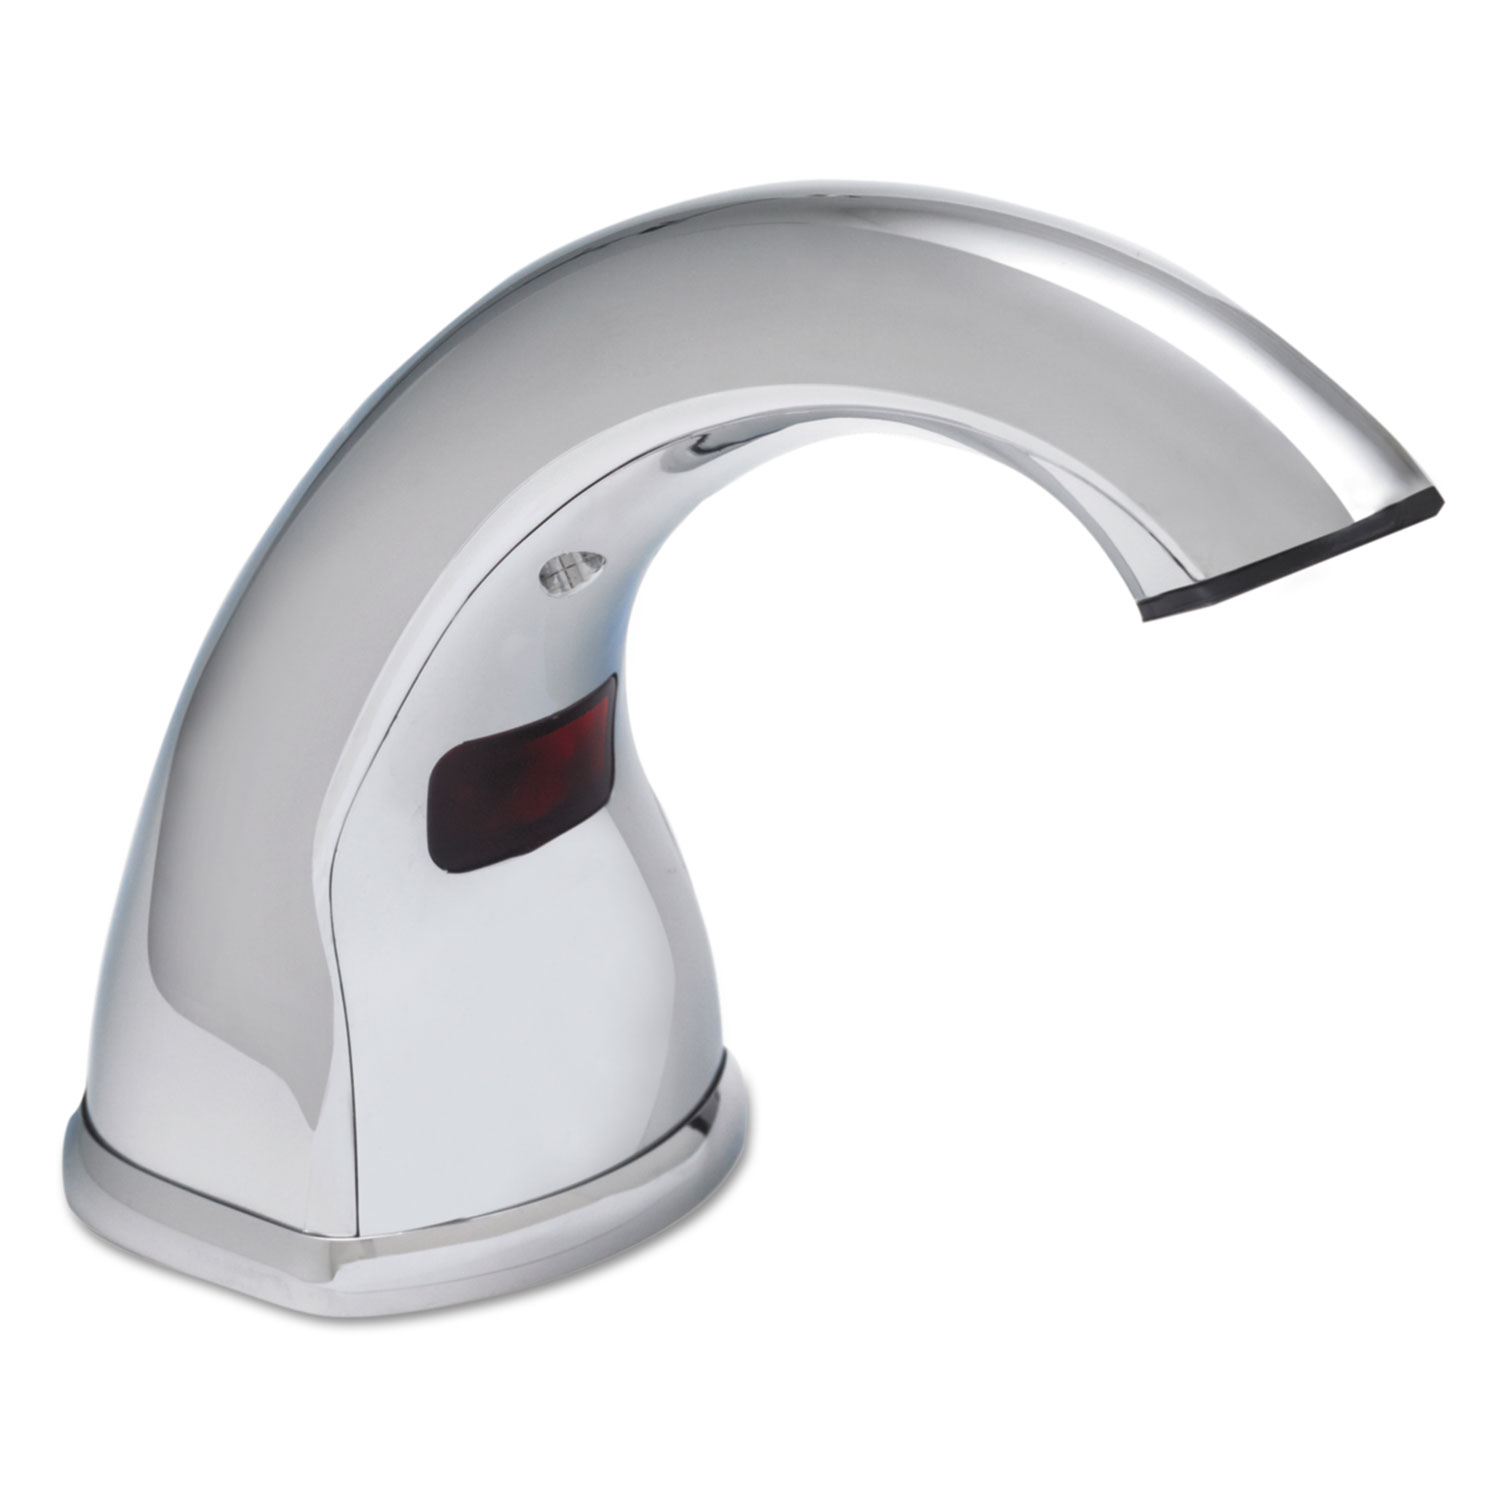  GOJO 8520-01 CXi Touch Free Counter Mount Soap Dispenser, 1500 mL/2300 mL, 2.25 x 5.75 x 9.39, Chrome (GOJ852001) 